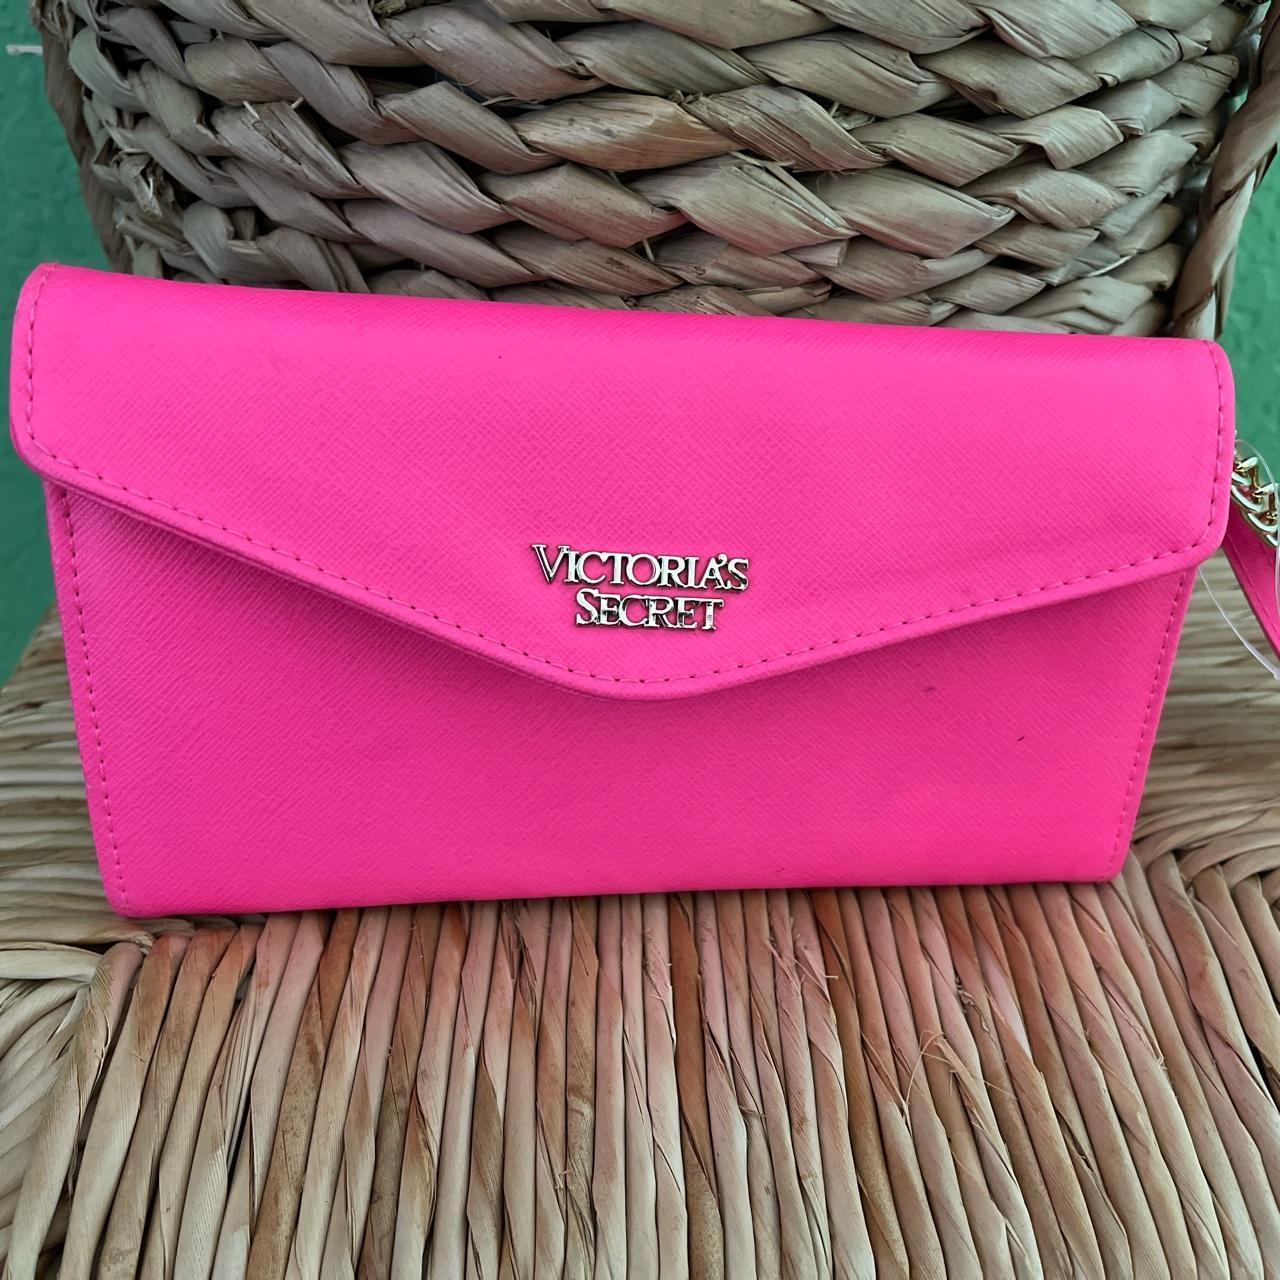 Victoria's Secret, Bags, Victorias Secret Hot Pink Wallet Clutch